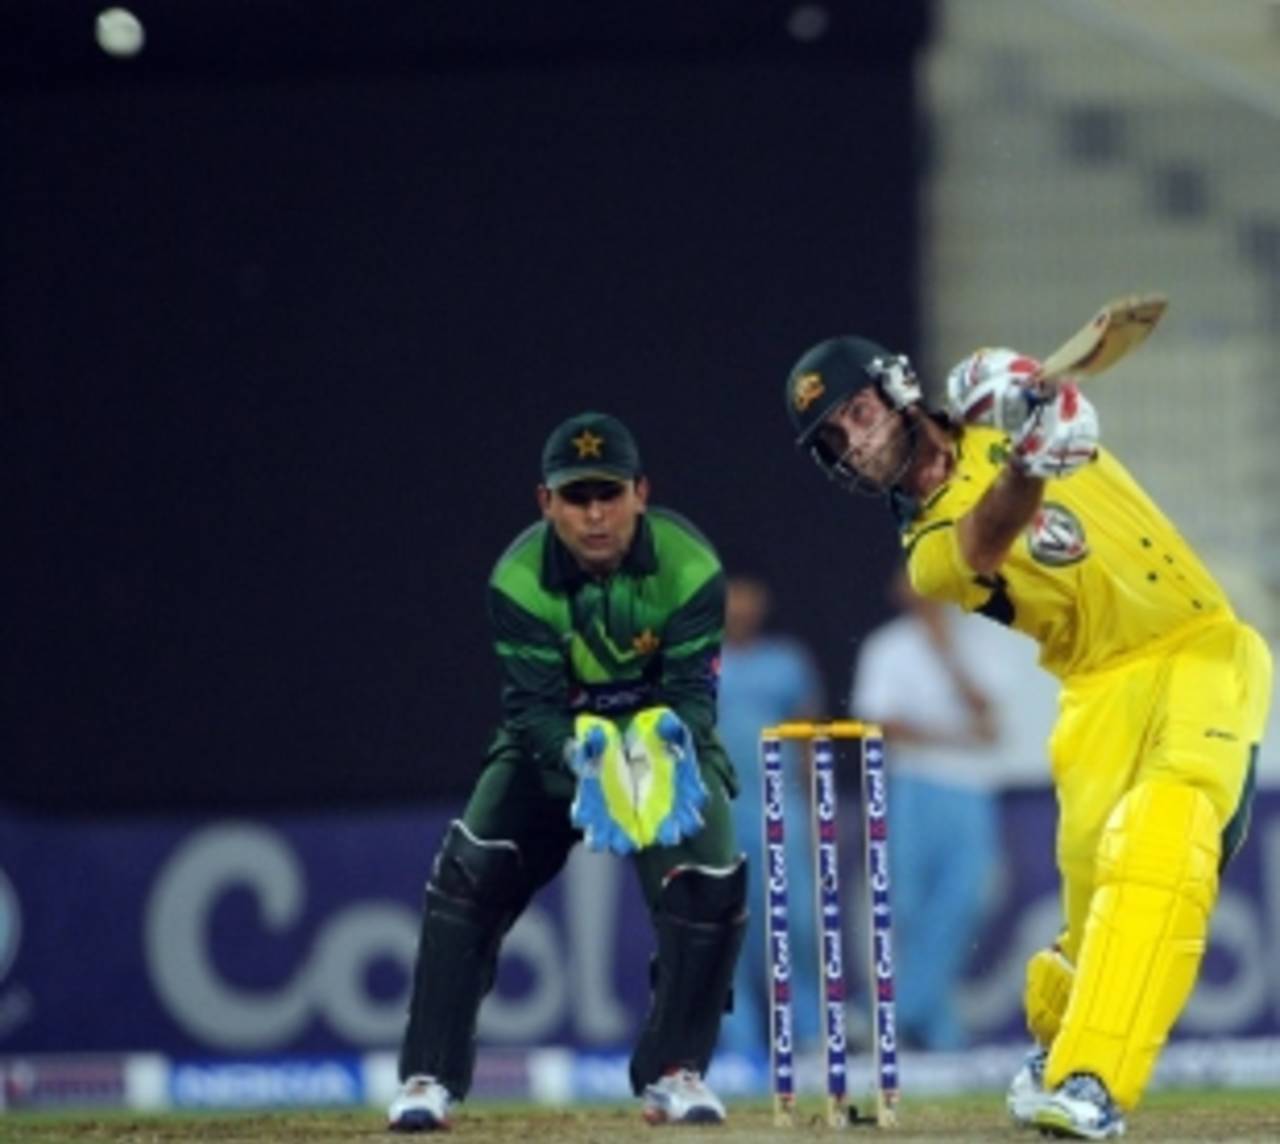 Glenn Maxwell's batting helped Australia clinch the close one-day series&nbsp;&nbsp;&bull;&nbsp;&nbsp;Associated Press